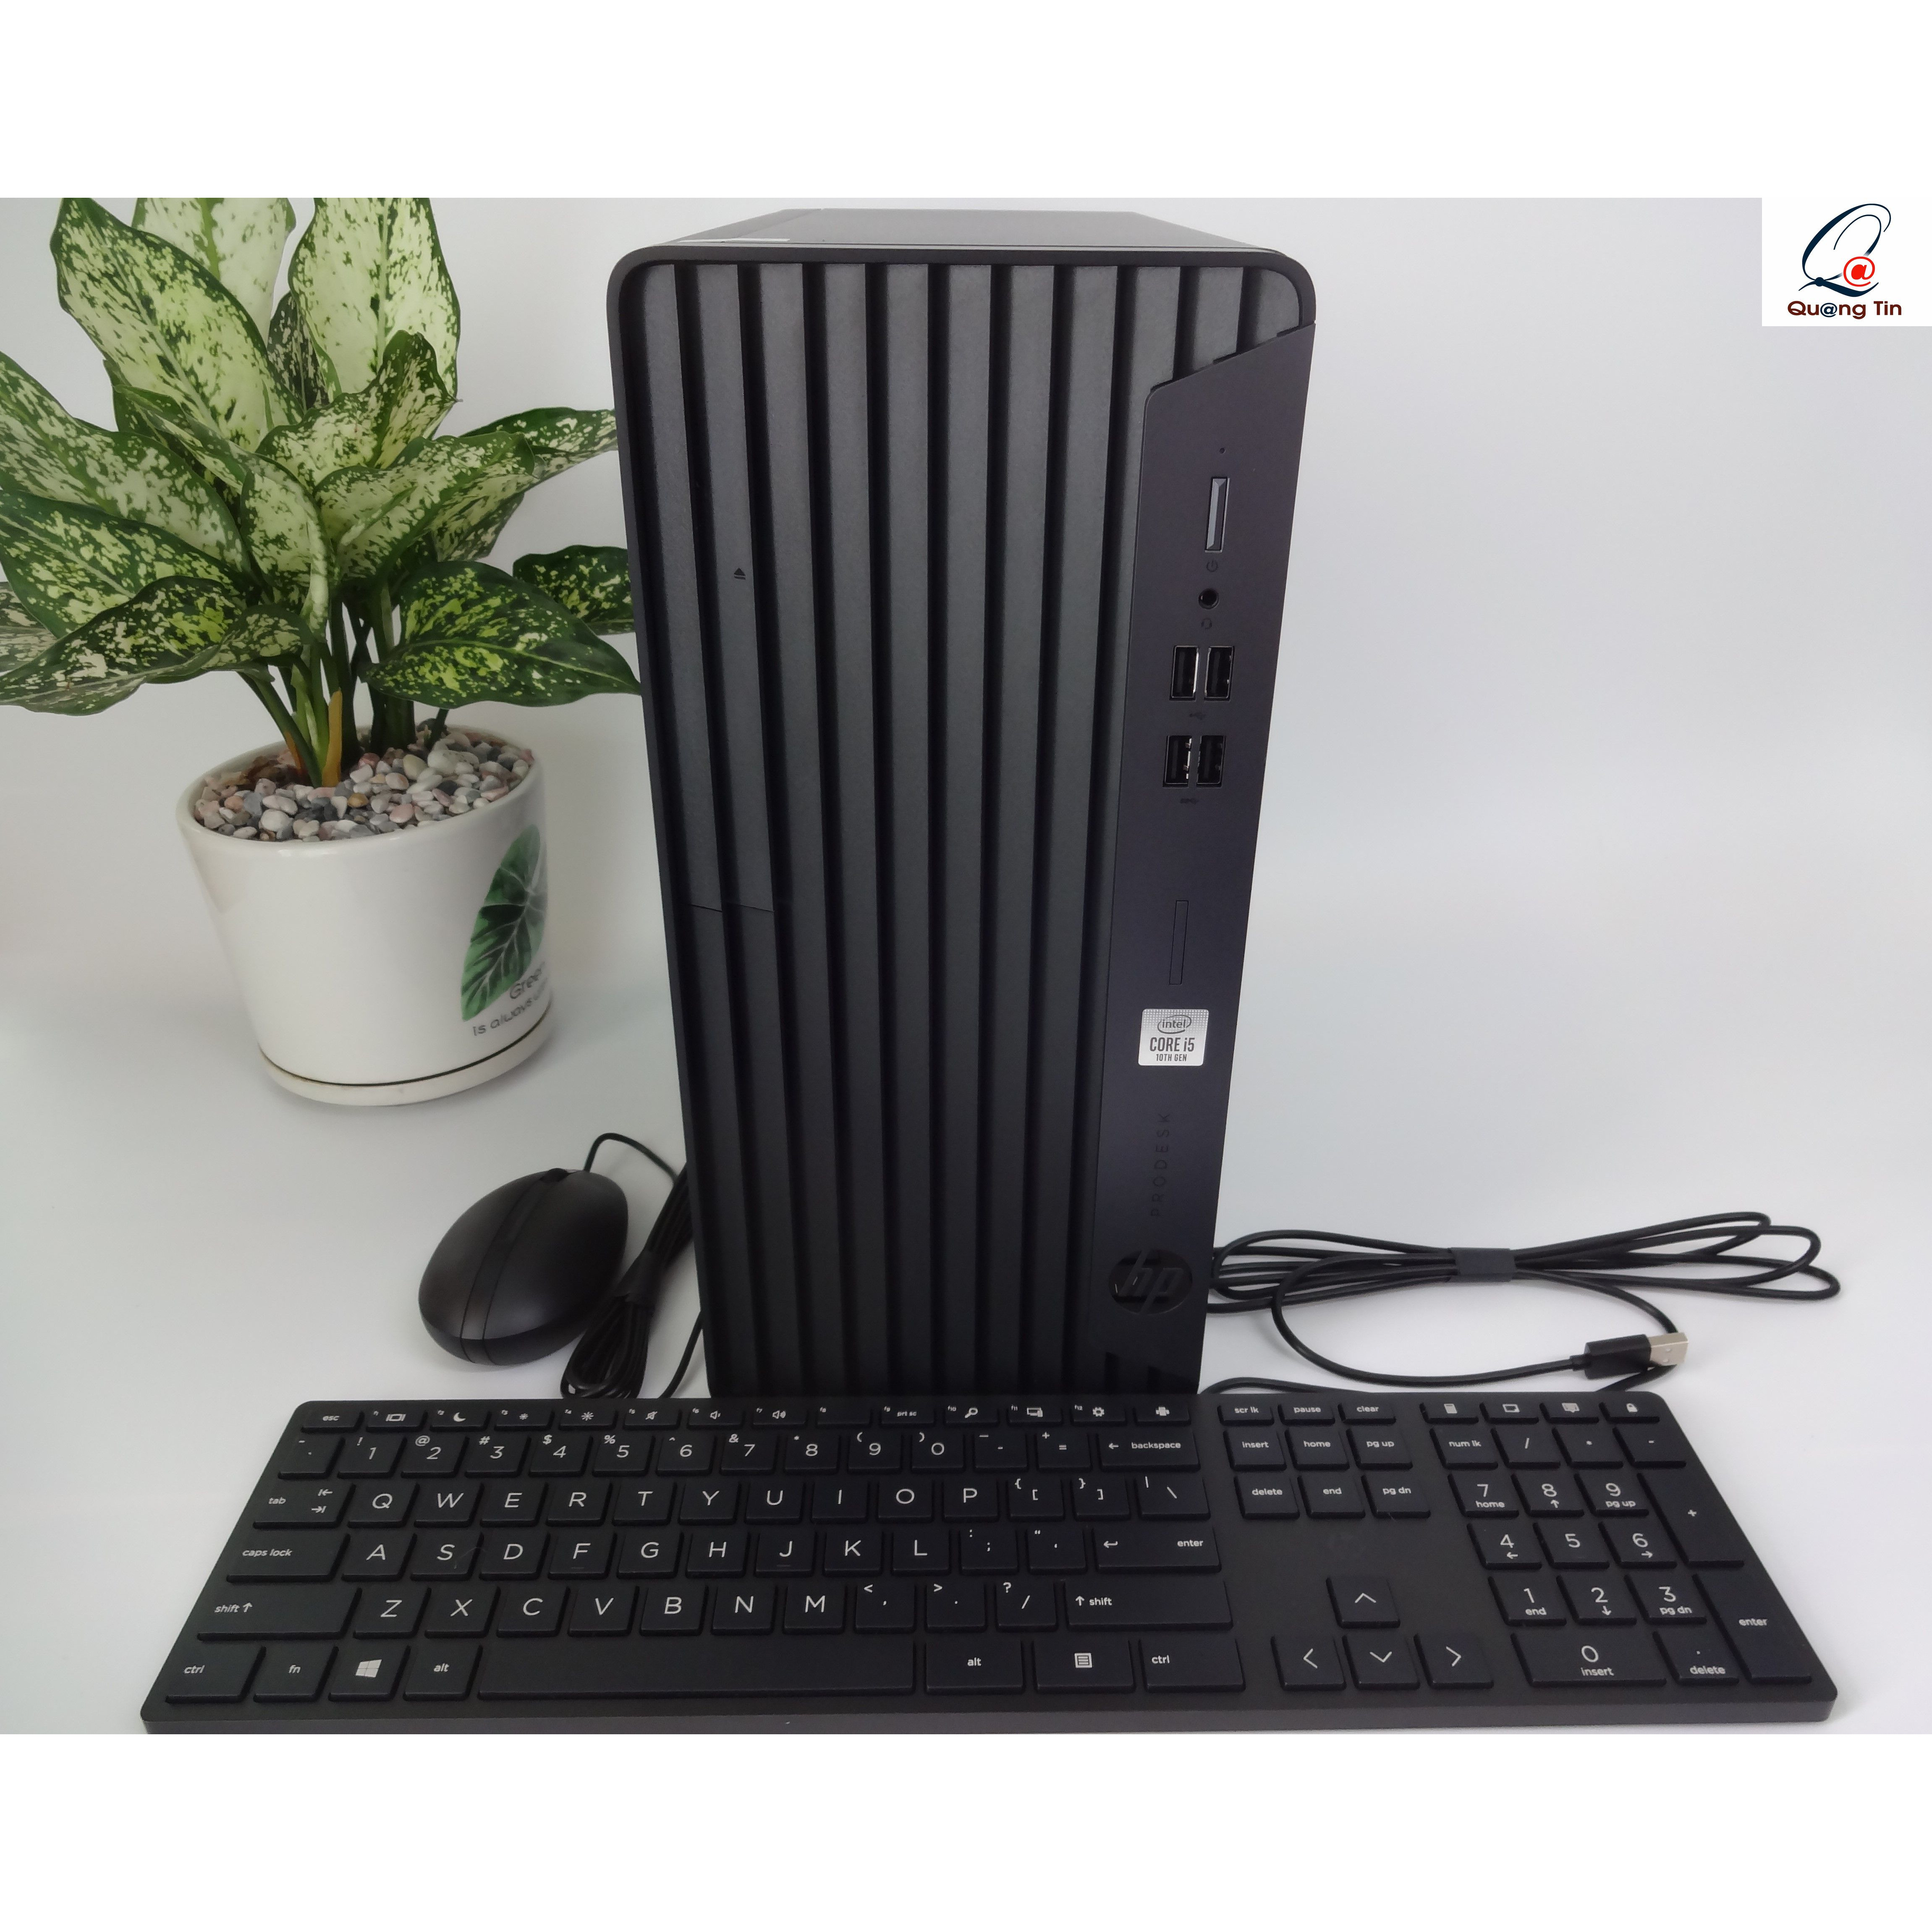 PC HP ProDesk 400G7 22C46PA / Core i5 /4GB/256GB SSD /Windows 10 home- Hàng Chính Hãng